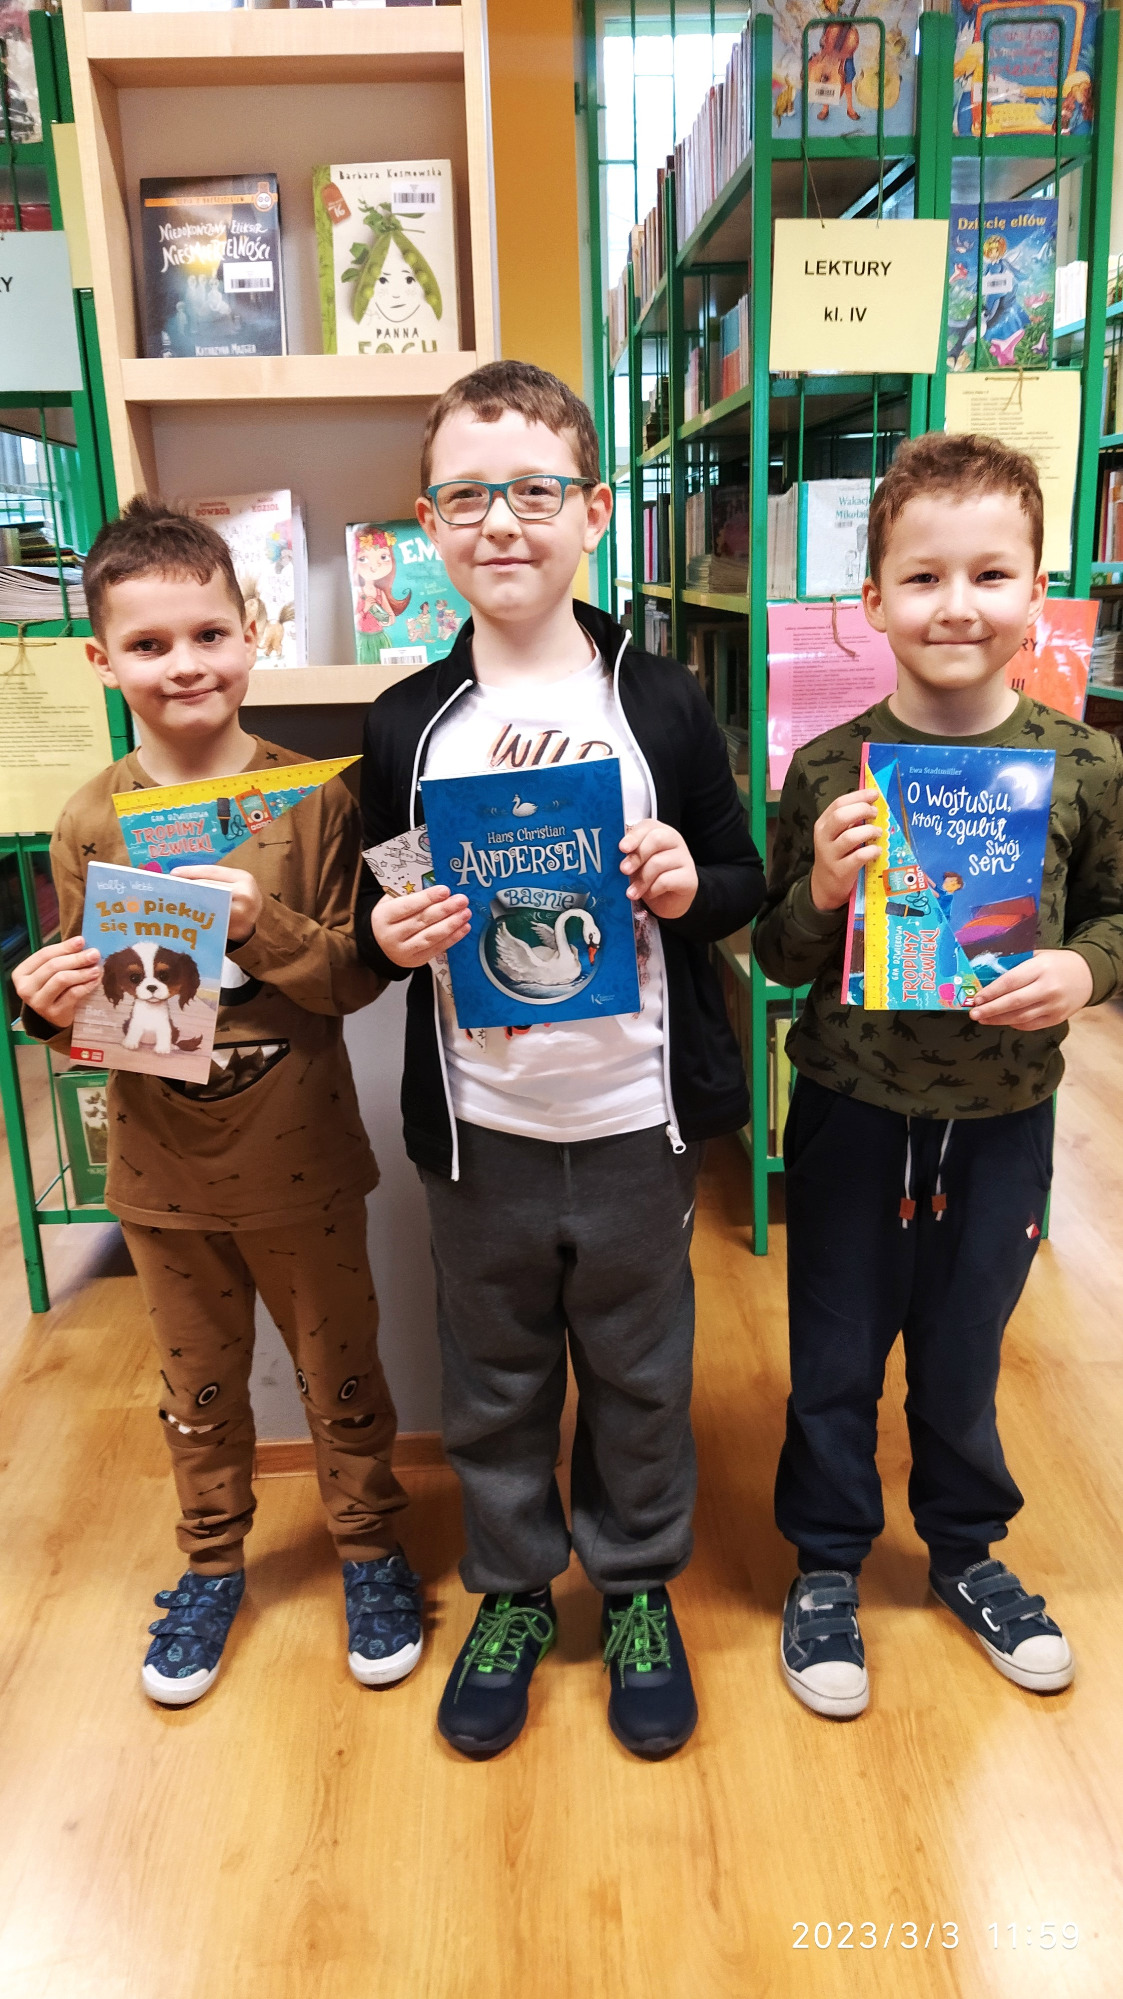 Troje uczniów w bibliotece szkolnej stojących przy półkach z książkami. Każdy z chłopców trzyma w dłoniach nagrodę książkową, którą prezentują.